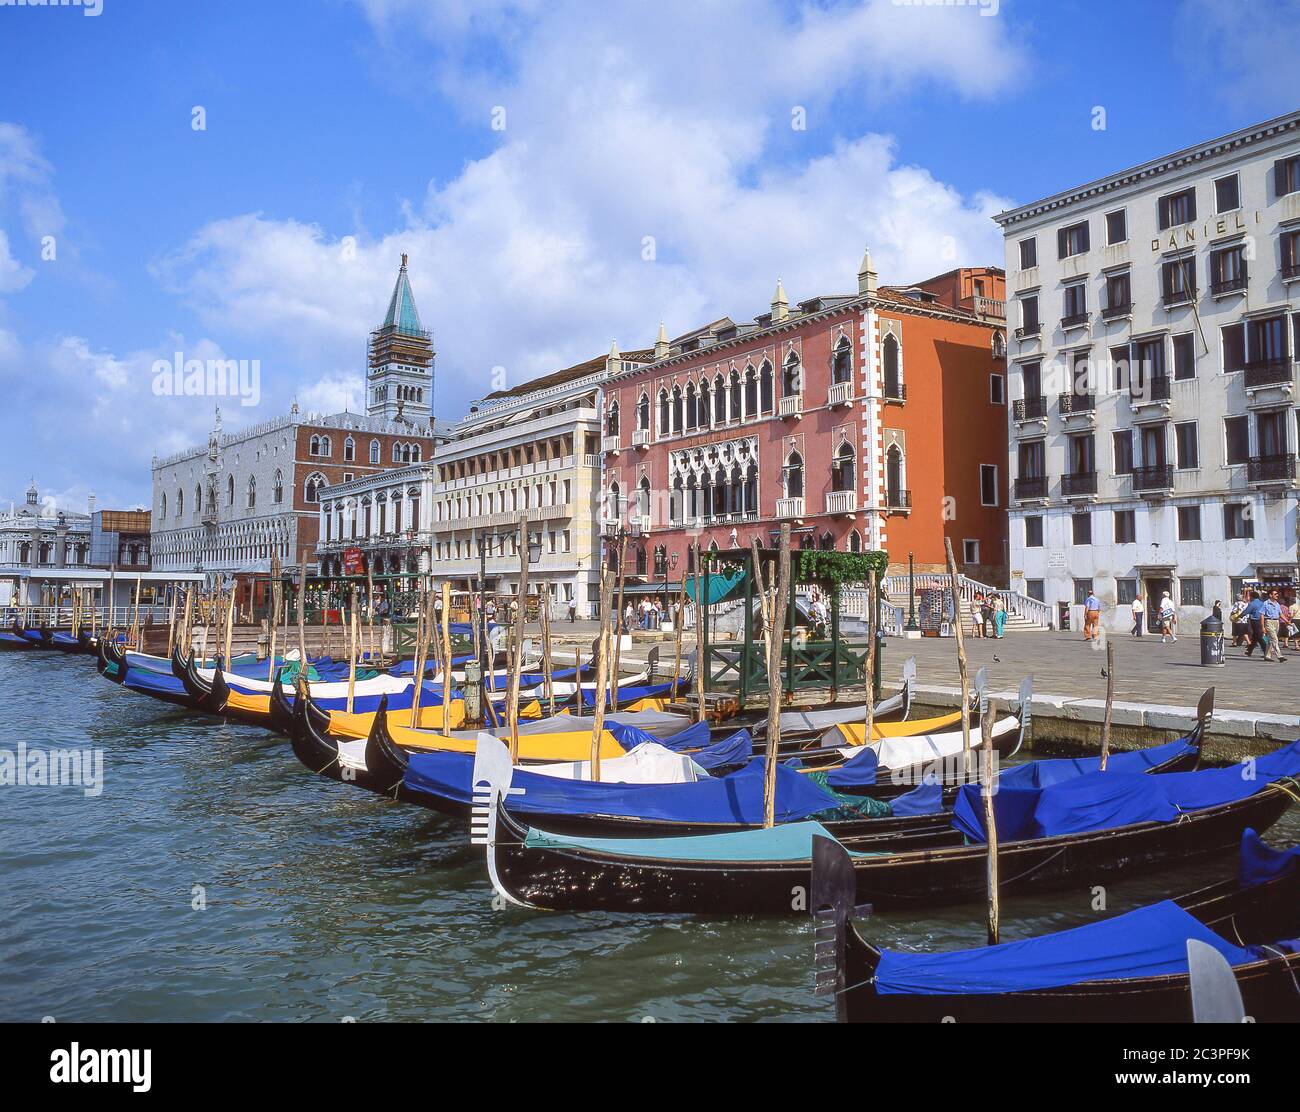 Gondolas moored on waterfront, Grand Canal, Venice (Venezia), Veneto Region, Italy Stock Photo